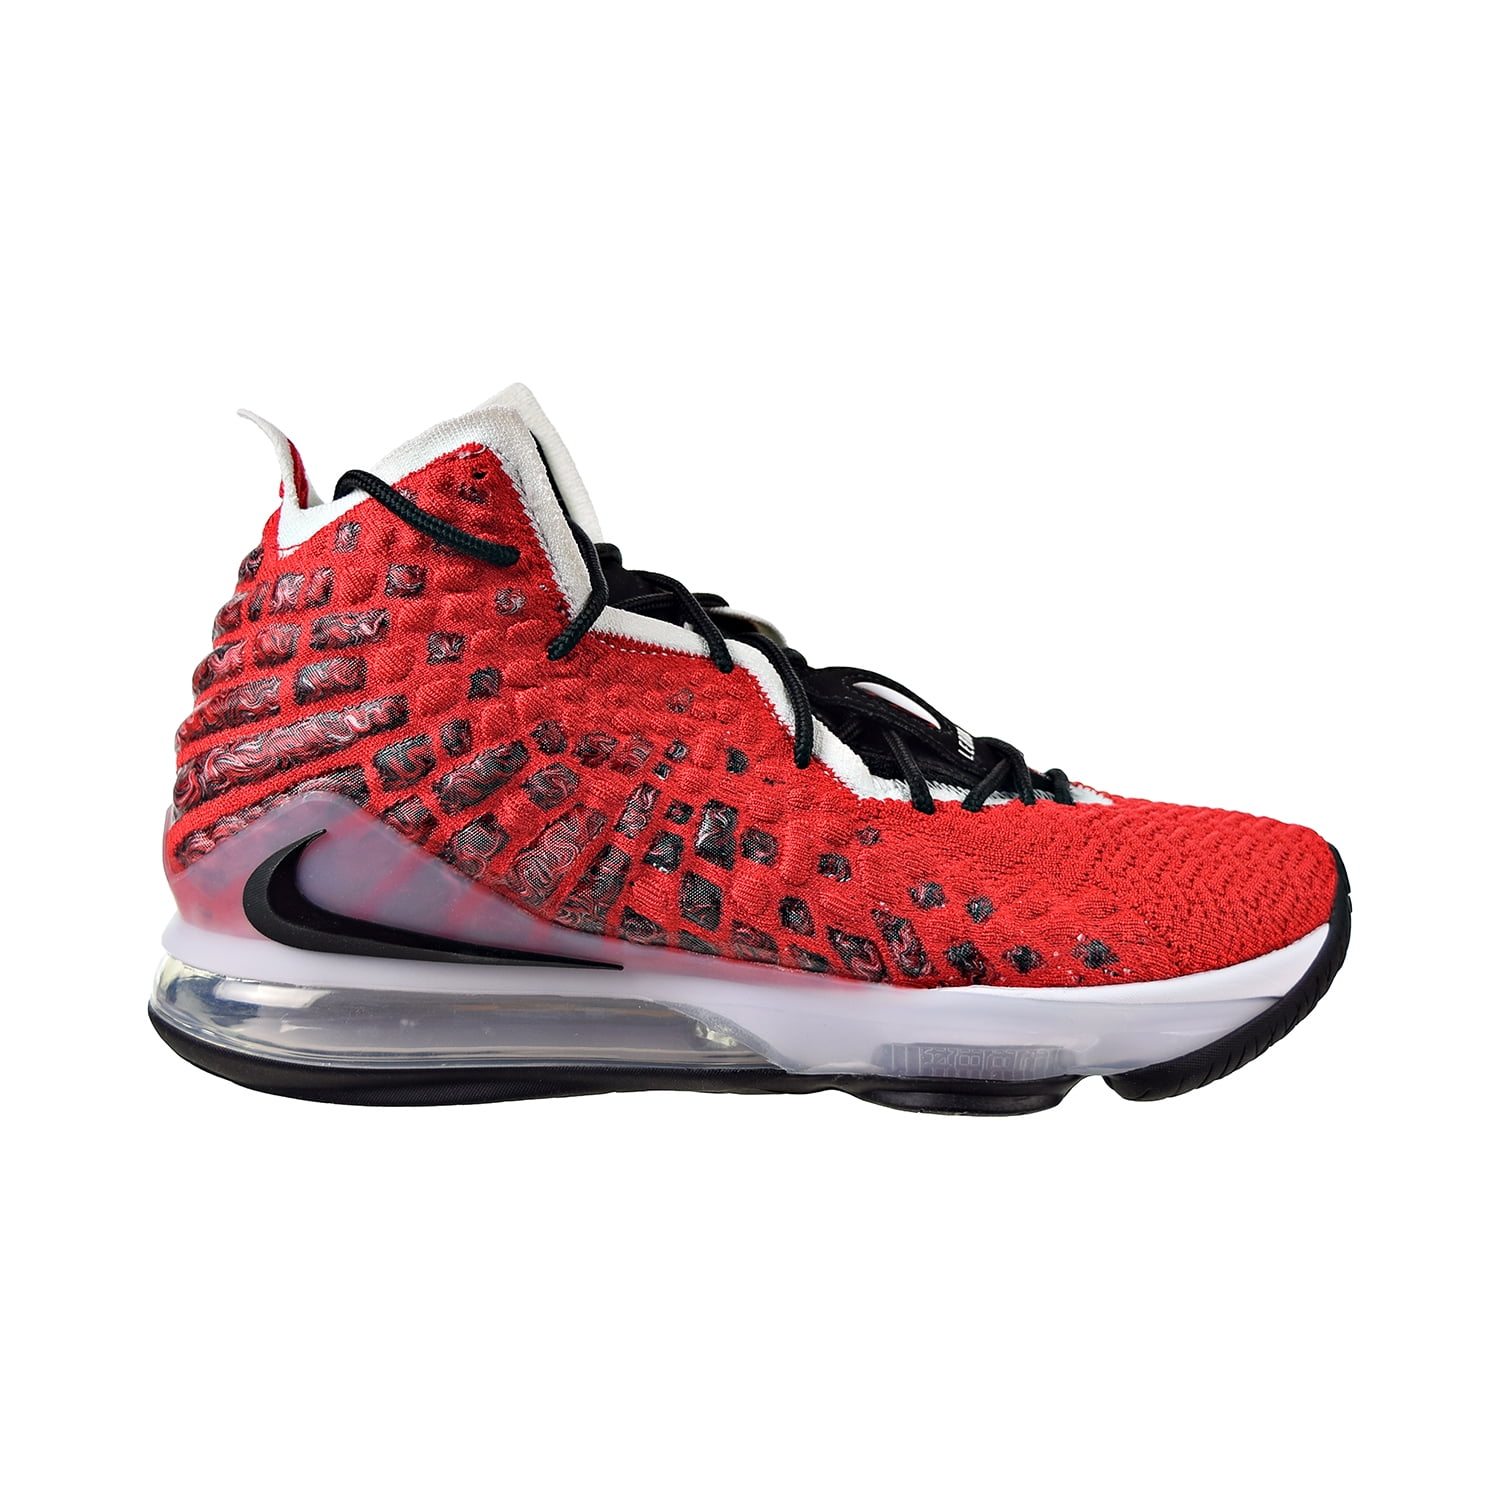 Nike Men's Pippen 6 Basketball Shoe White/University Red/Black